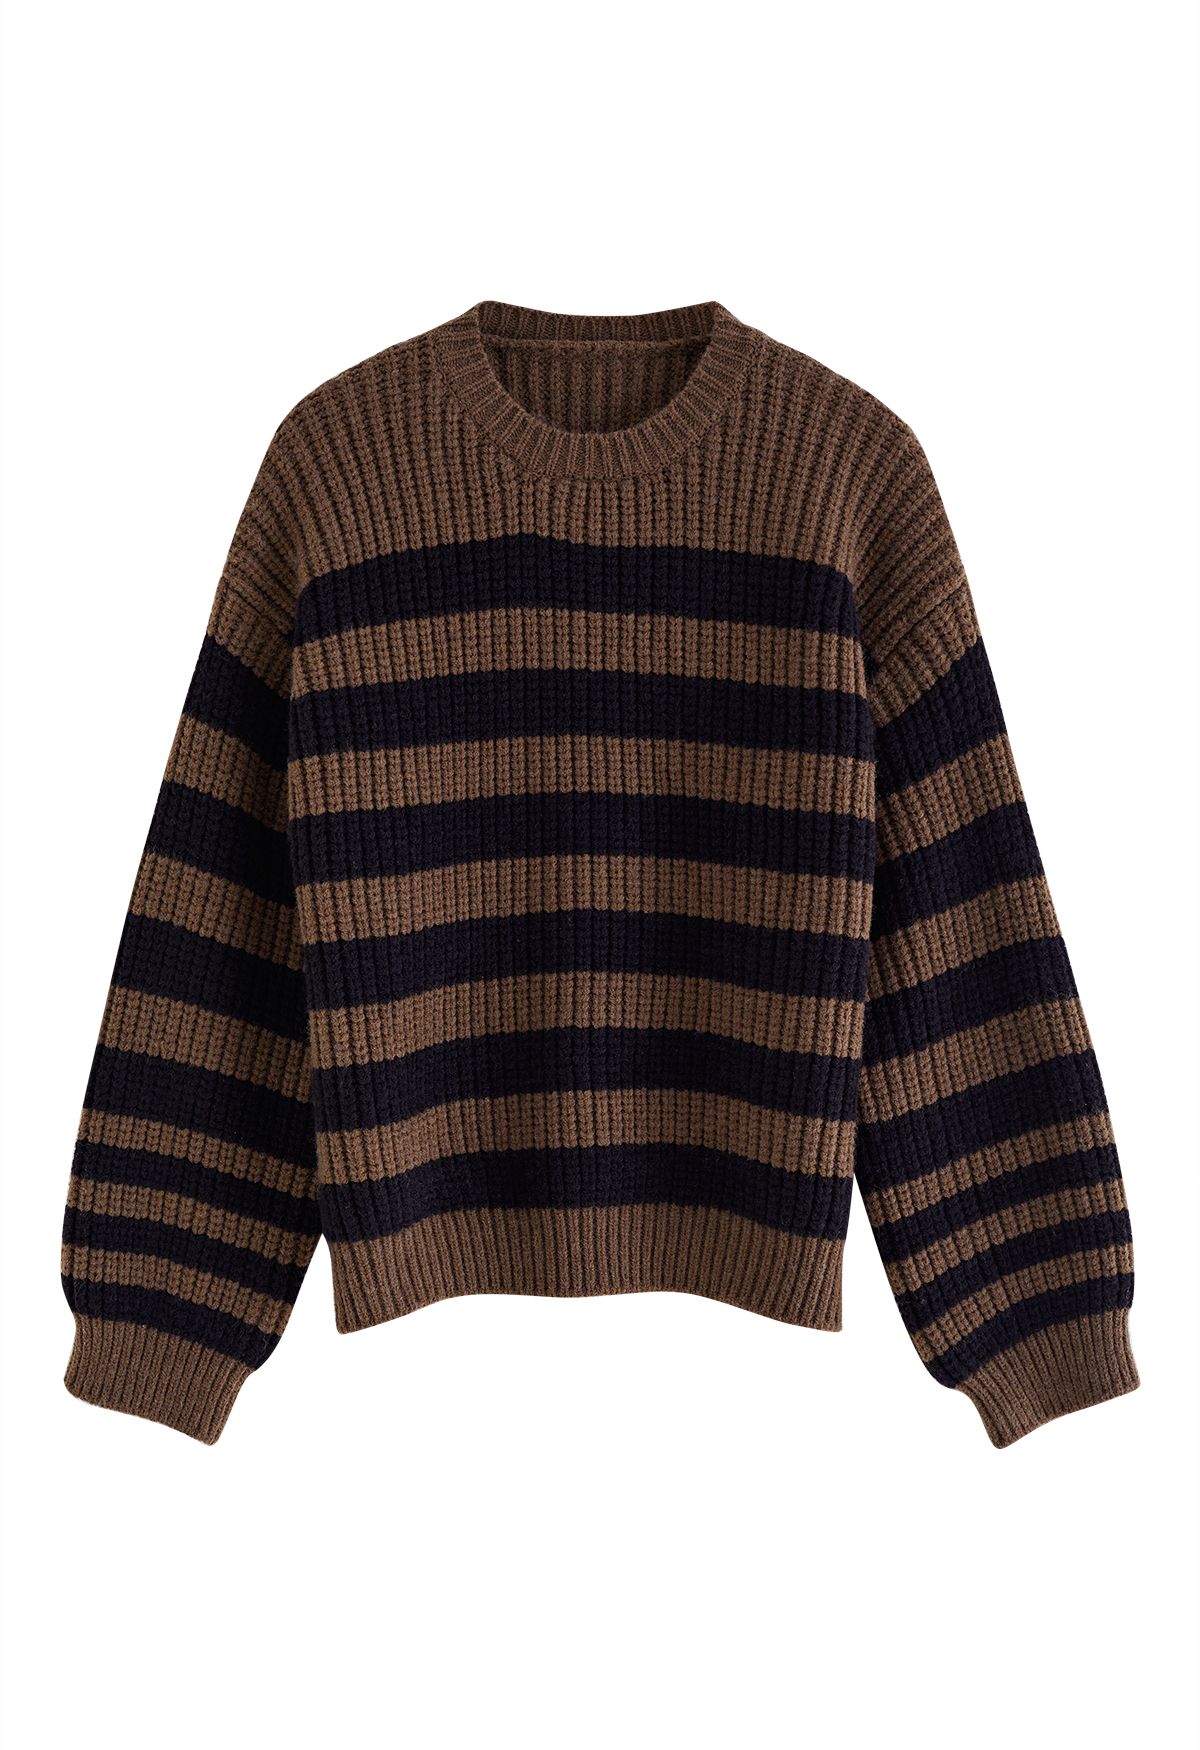 Pull en tricot rayé à écharpe amovible en marron